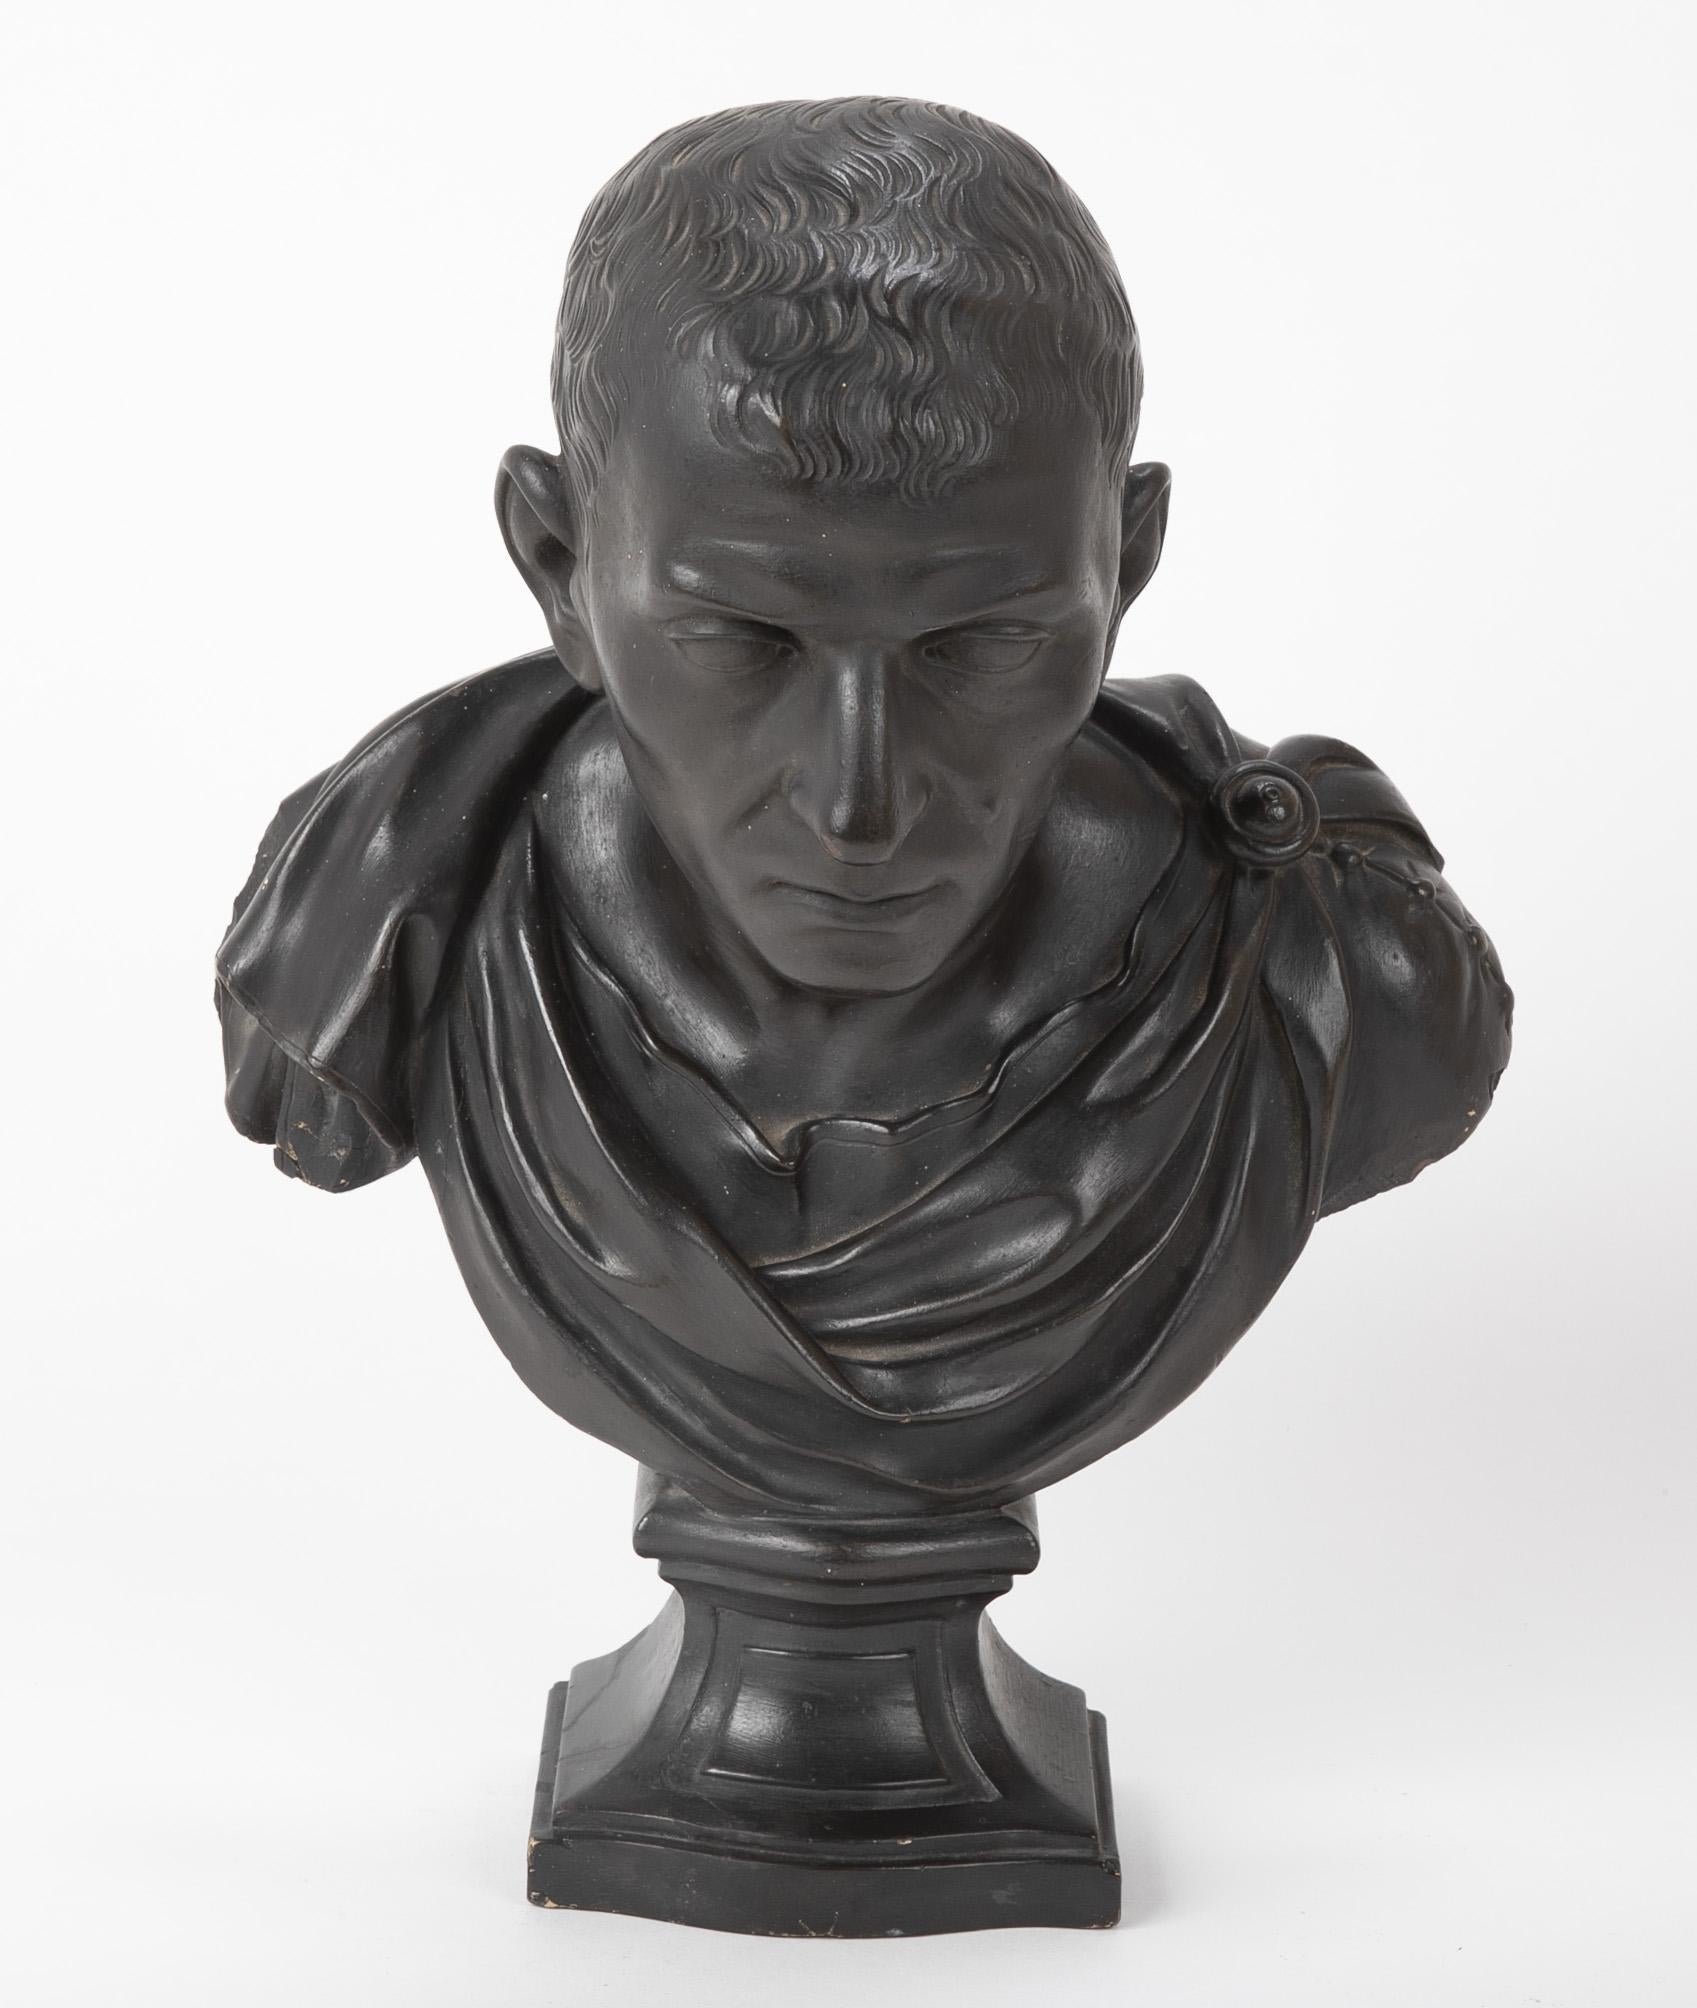 Buste de Marcus Tulles Cicero, consul romain en 63 A.C. réalisé en plâtre ébonisé, vers 1880.

Marcus Tullius Cicero était un homme d'État, un orateur, un juriste et un philosophe romain, qui a été consul en 63 avant Jésus-Christ. Issu d'une riche